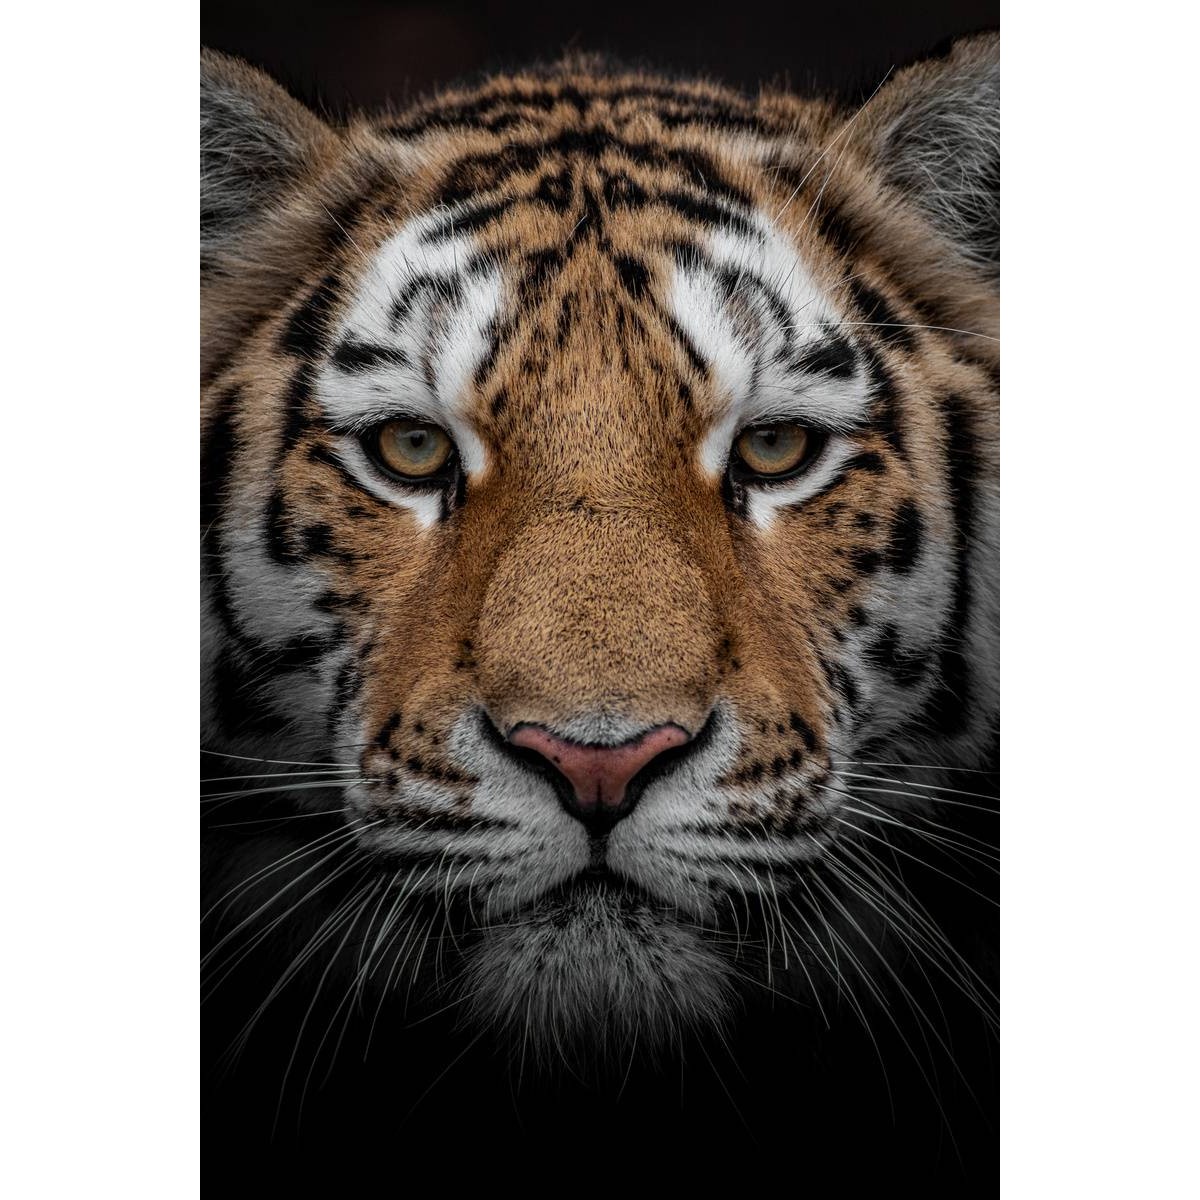 Tableau sur toile portrait d'un tigre 45x65cm